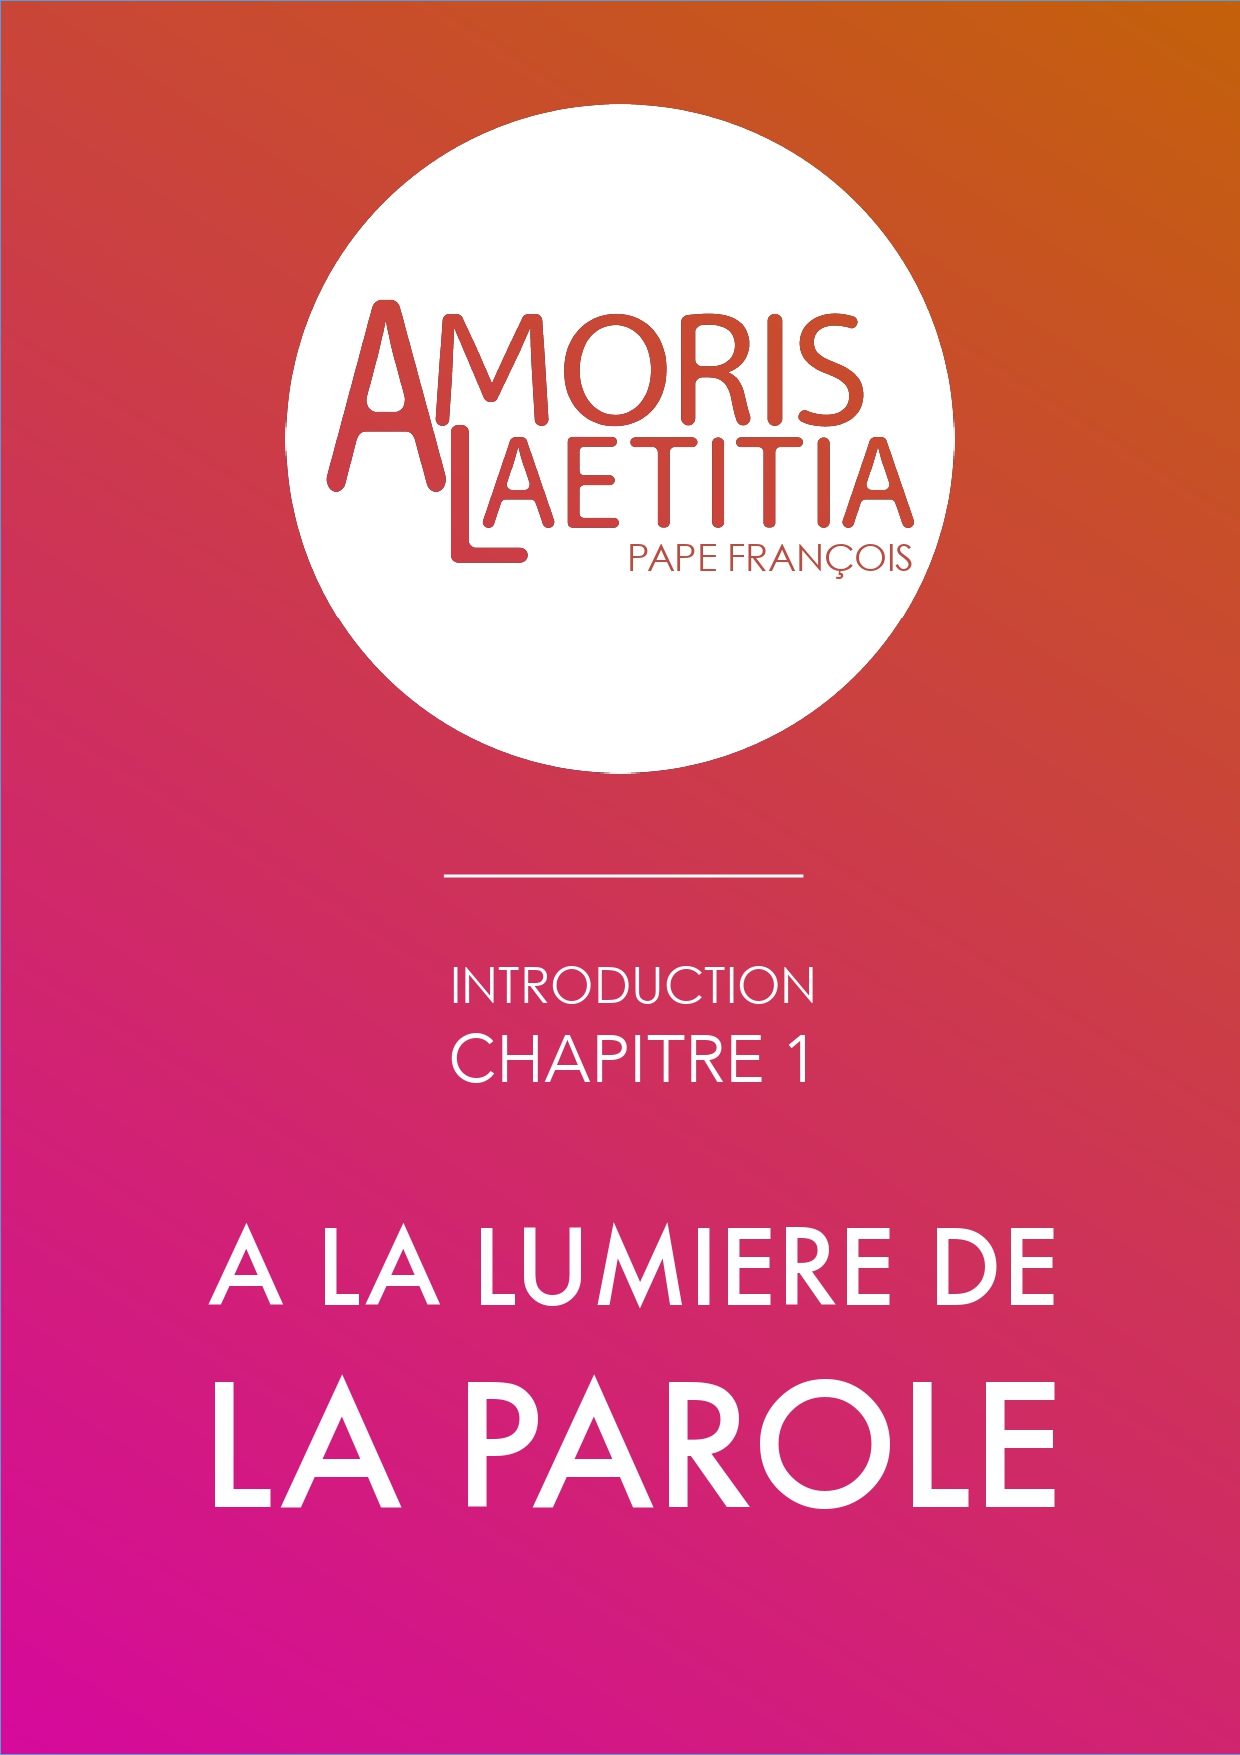 Amoris Laetitia chapitre 1 : A la lumière de la Parole